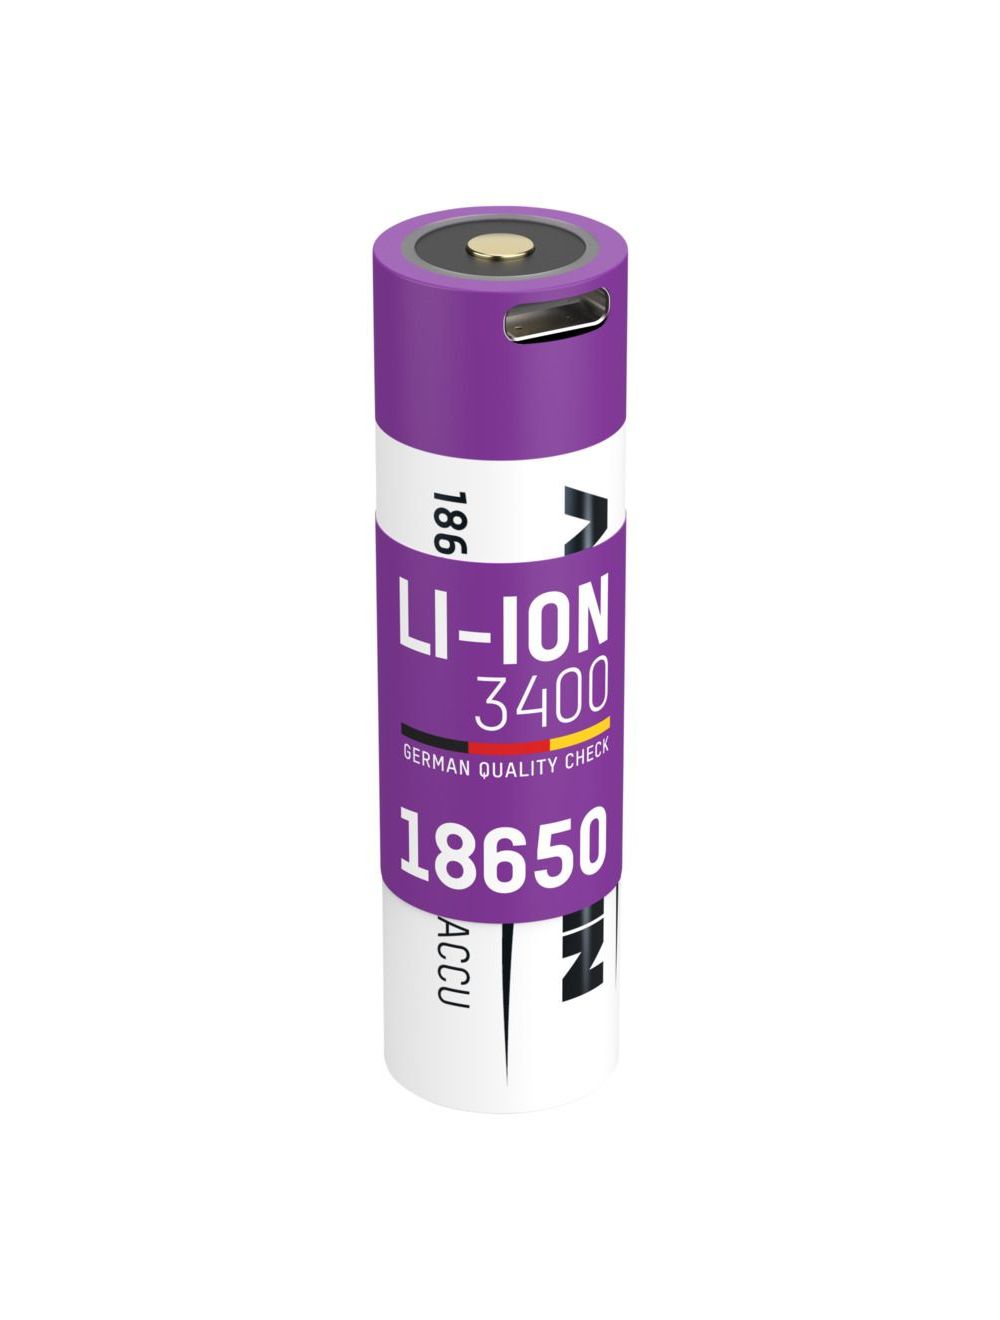 Batteria agli ioni di litio 18650 3400 mAh con presa di ricarica USB Type-C  - TuttoBatterie